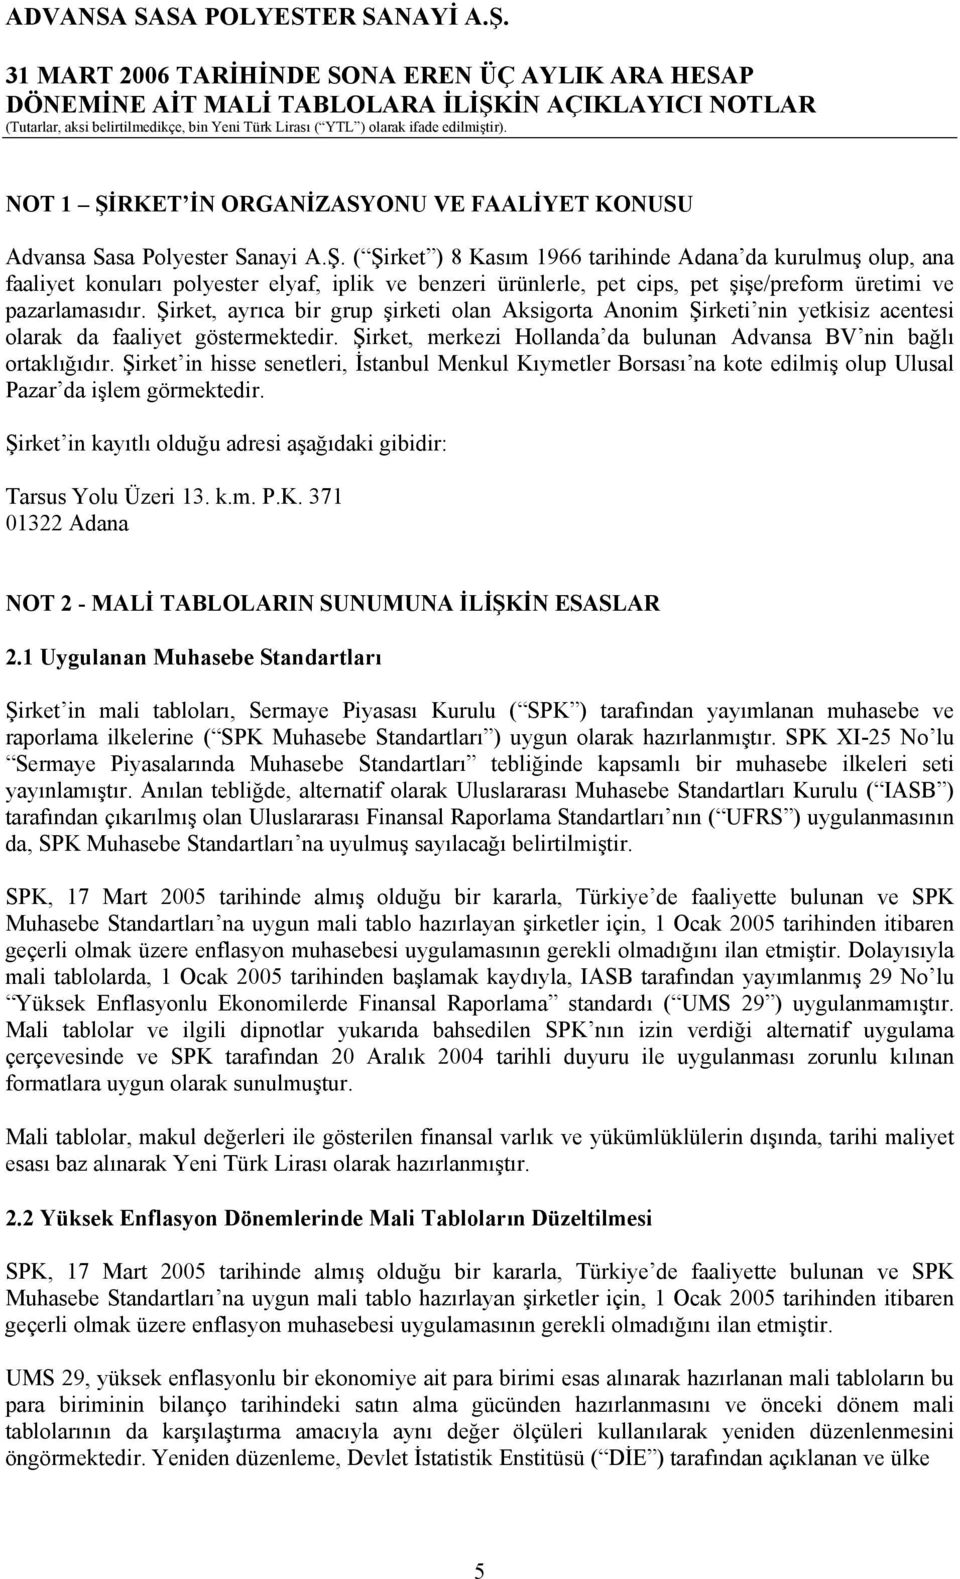 Şirket in hisse senetleri, İstanbul Menkul Kıymetler Borsası na kote edilmiş olup Ulusal Pazar da işlem görmektedir. Şirket in kayıtlı olduğu adresi aşağıdaki gibidir: Tarsus Yolu Üzeri 13. k.m. P.K. 371 01322 Adana NOT 2 - MALİ TABLOLARIN SUNUMUNA İLİŞKİN ESASLAR 2.